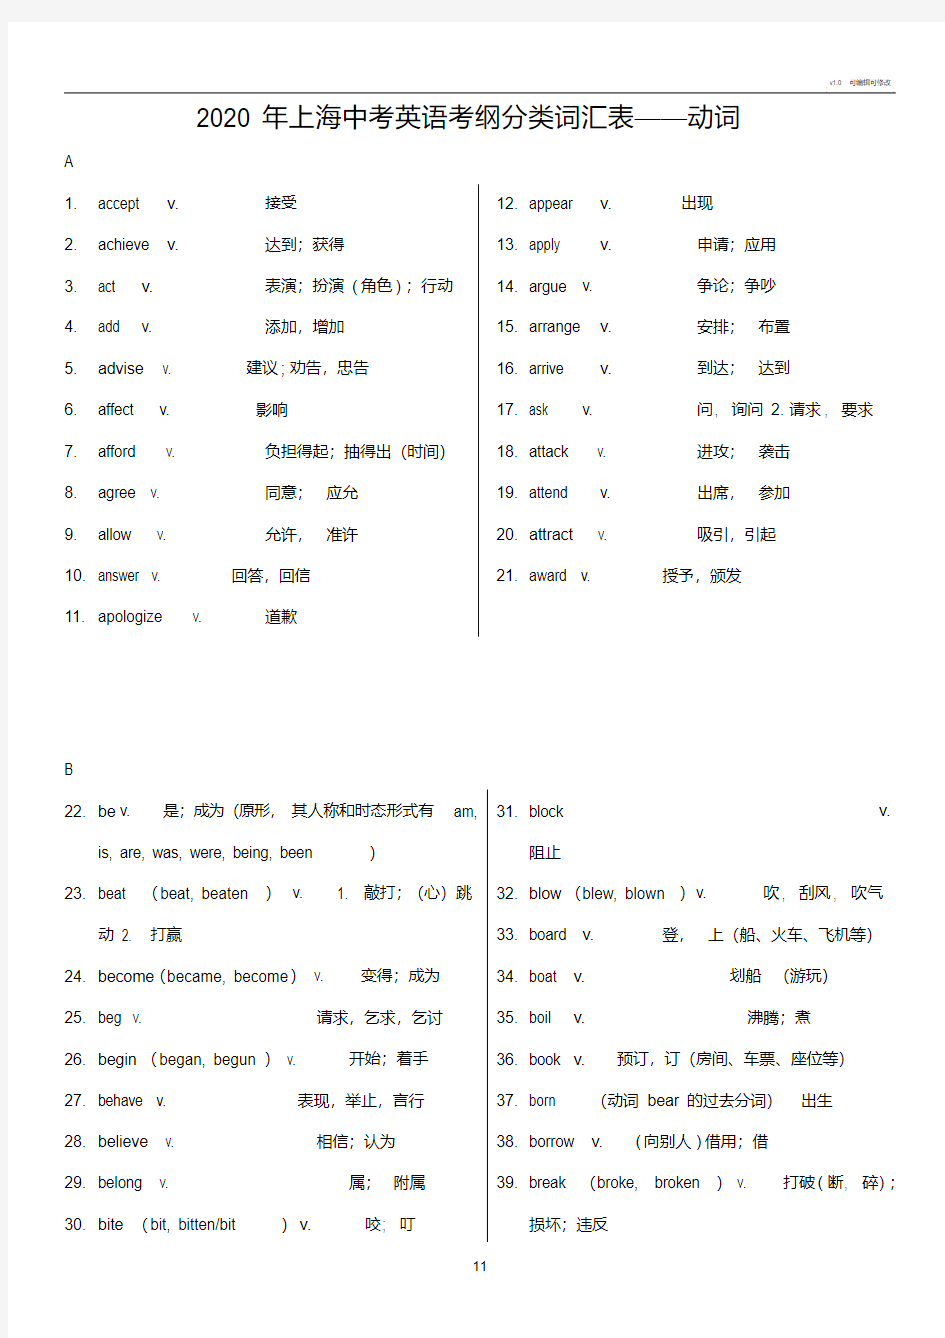 2020年上海中考英语考纲词汇分类表(20200731140251).pdf